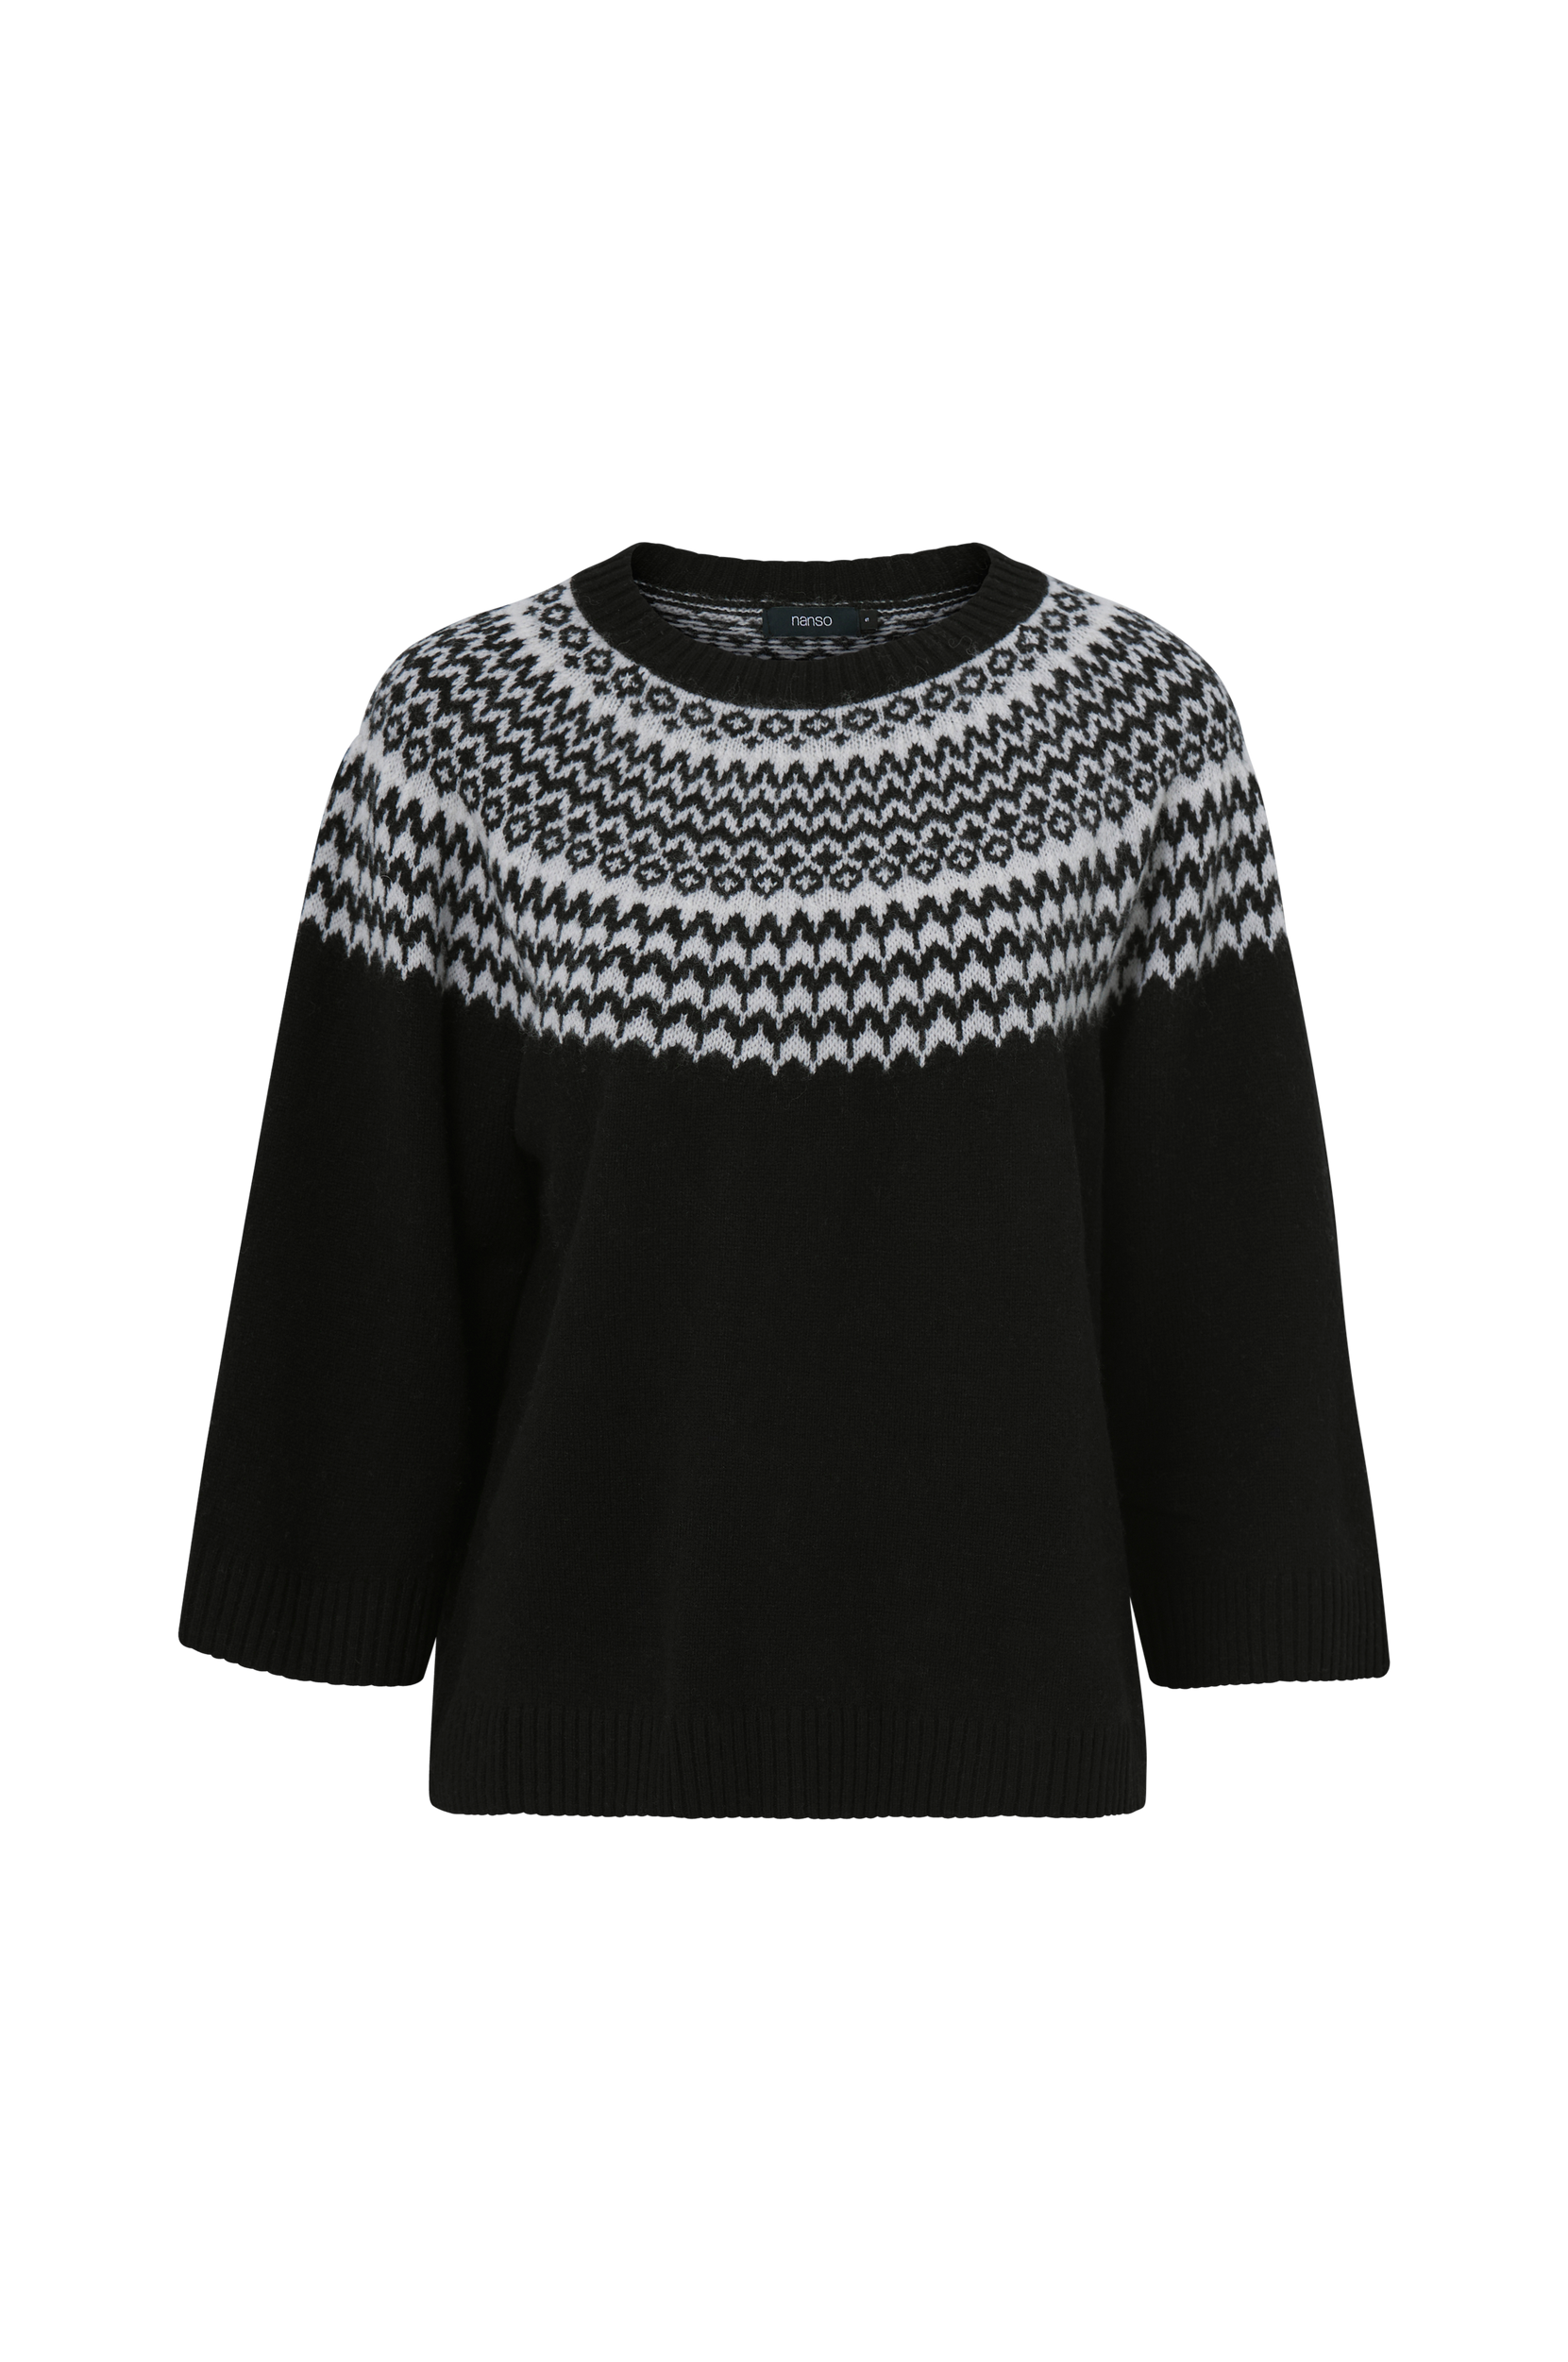 Nanso - Trøje Norra Knit Sweater - Sort - 36